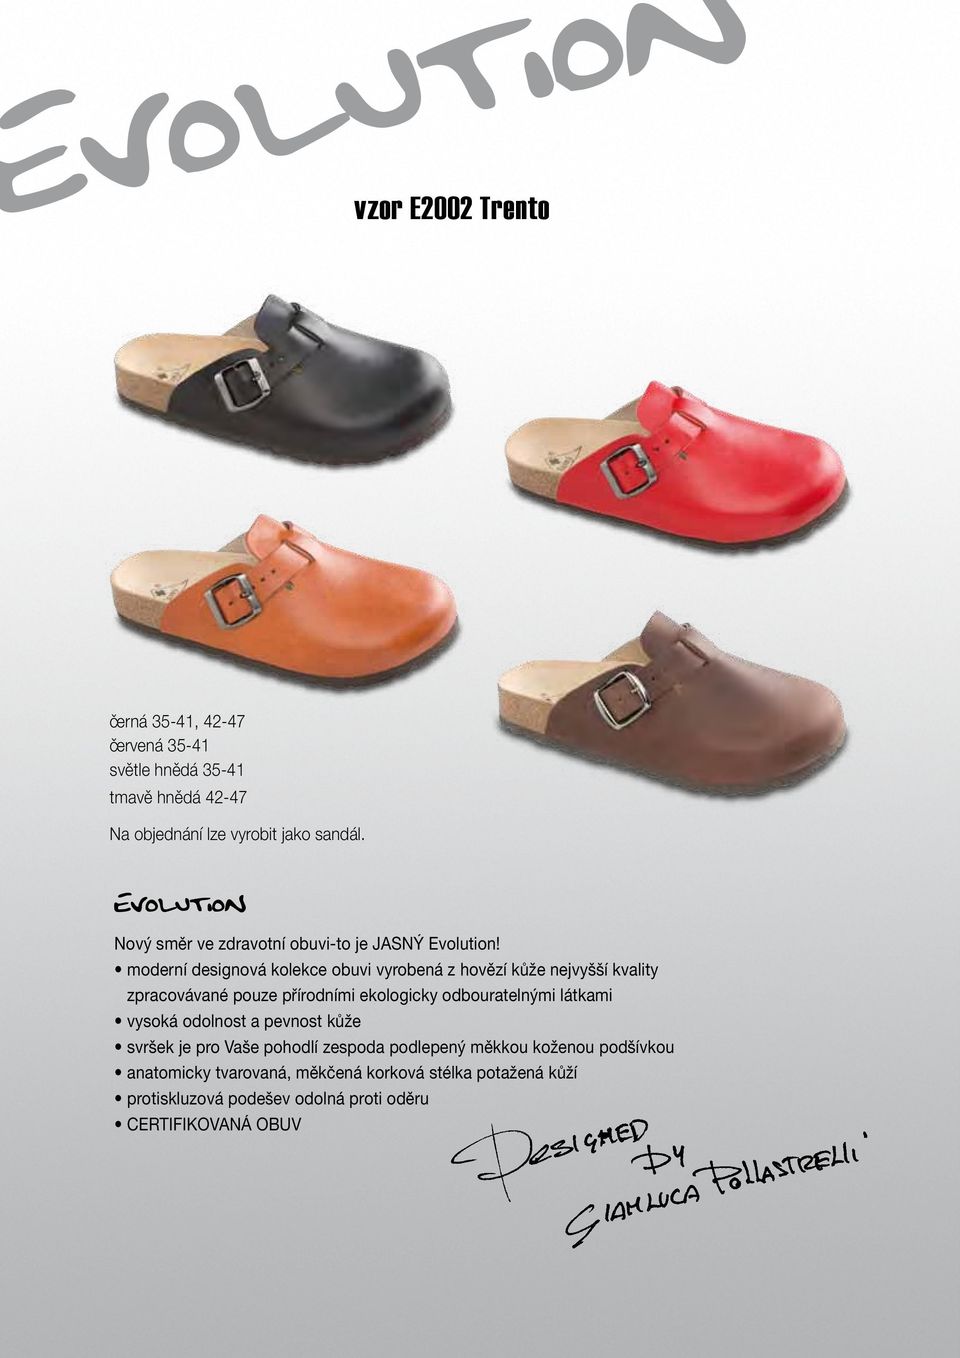 moderní designová kolekce obuvi vyrobená z hovězí kůže nejvyšší kvality zpracovávané pouze přírodními ekologicky odbouratelnými látkami